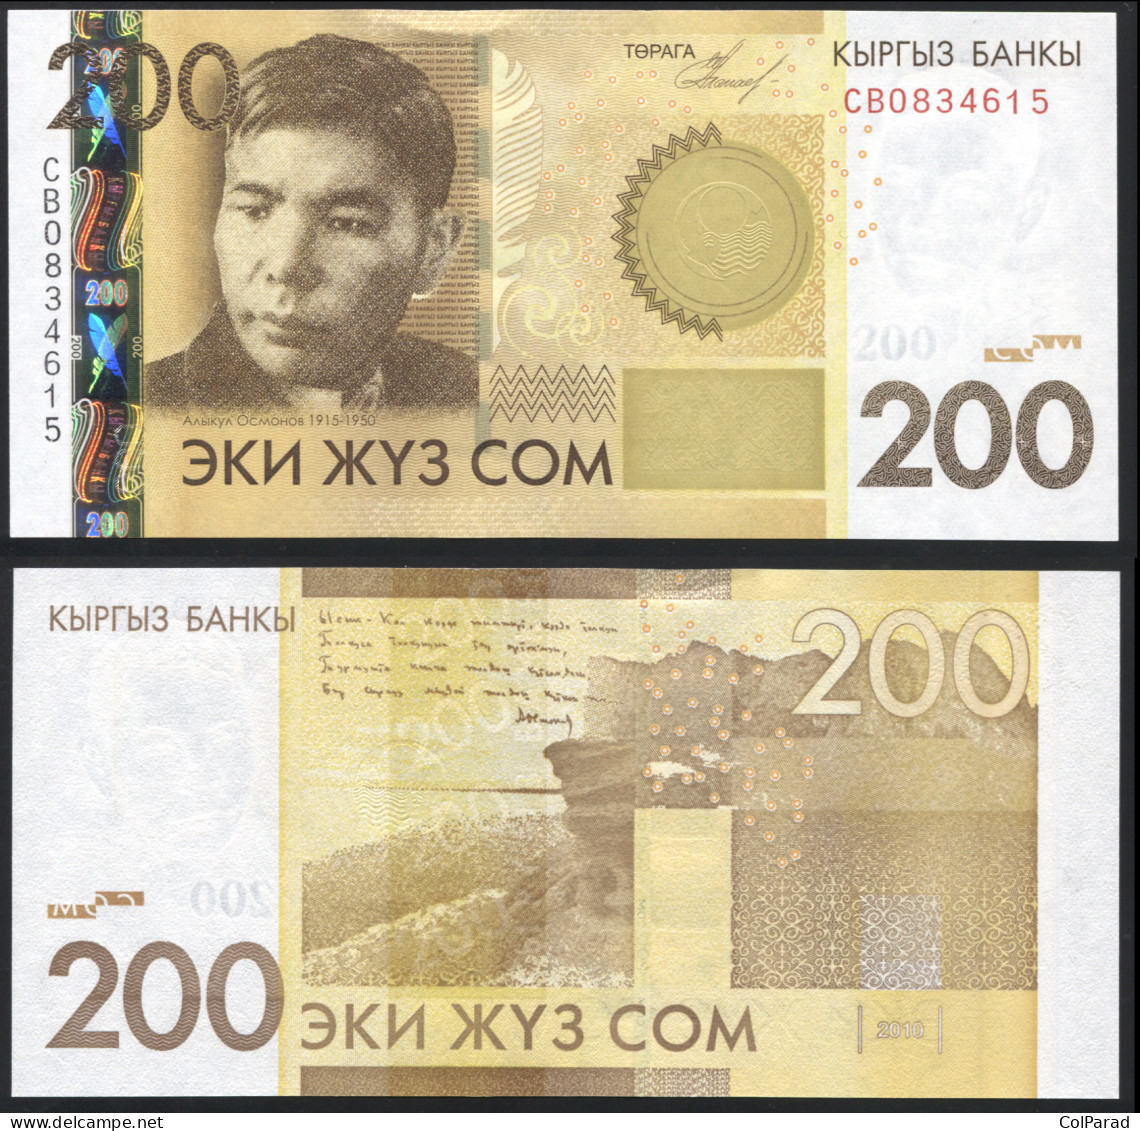 KYRGYZSTAN 200 SOM - 2010 - Paper Unc - P.27a Banknote - Kyrgyzstan